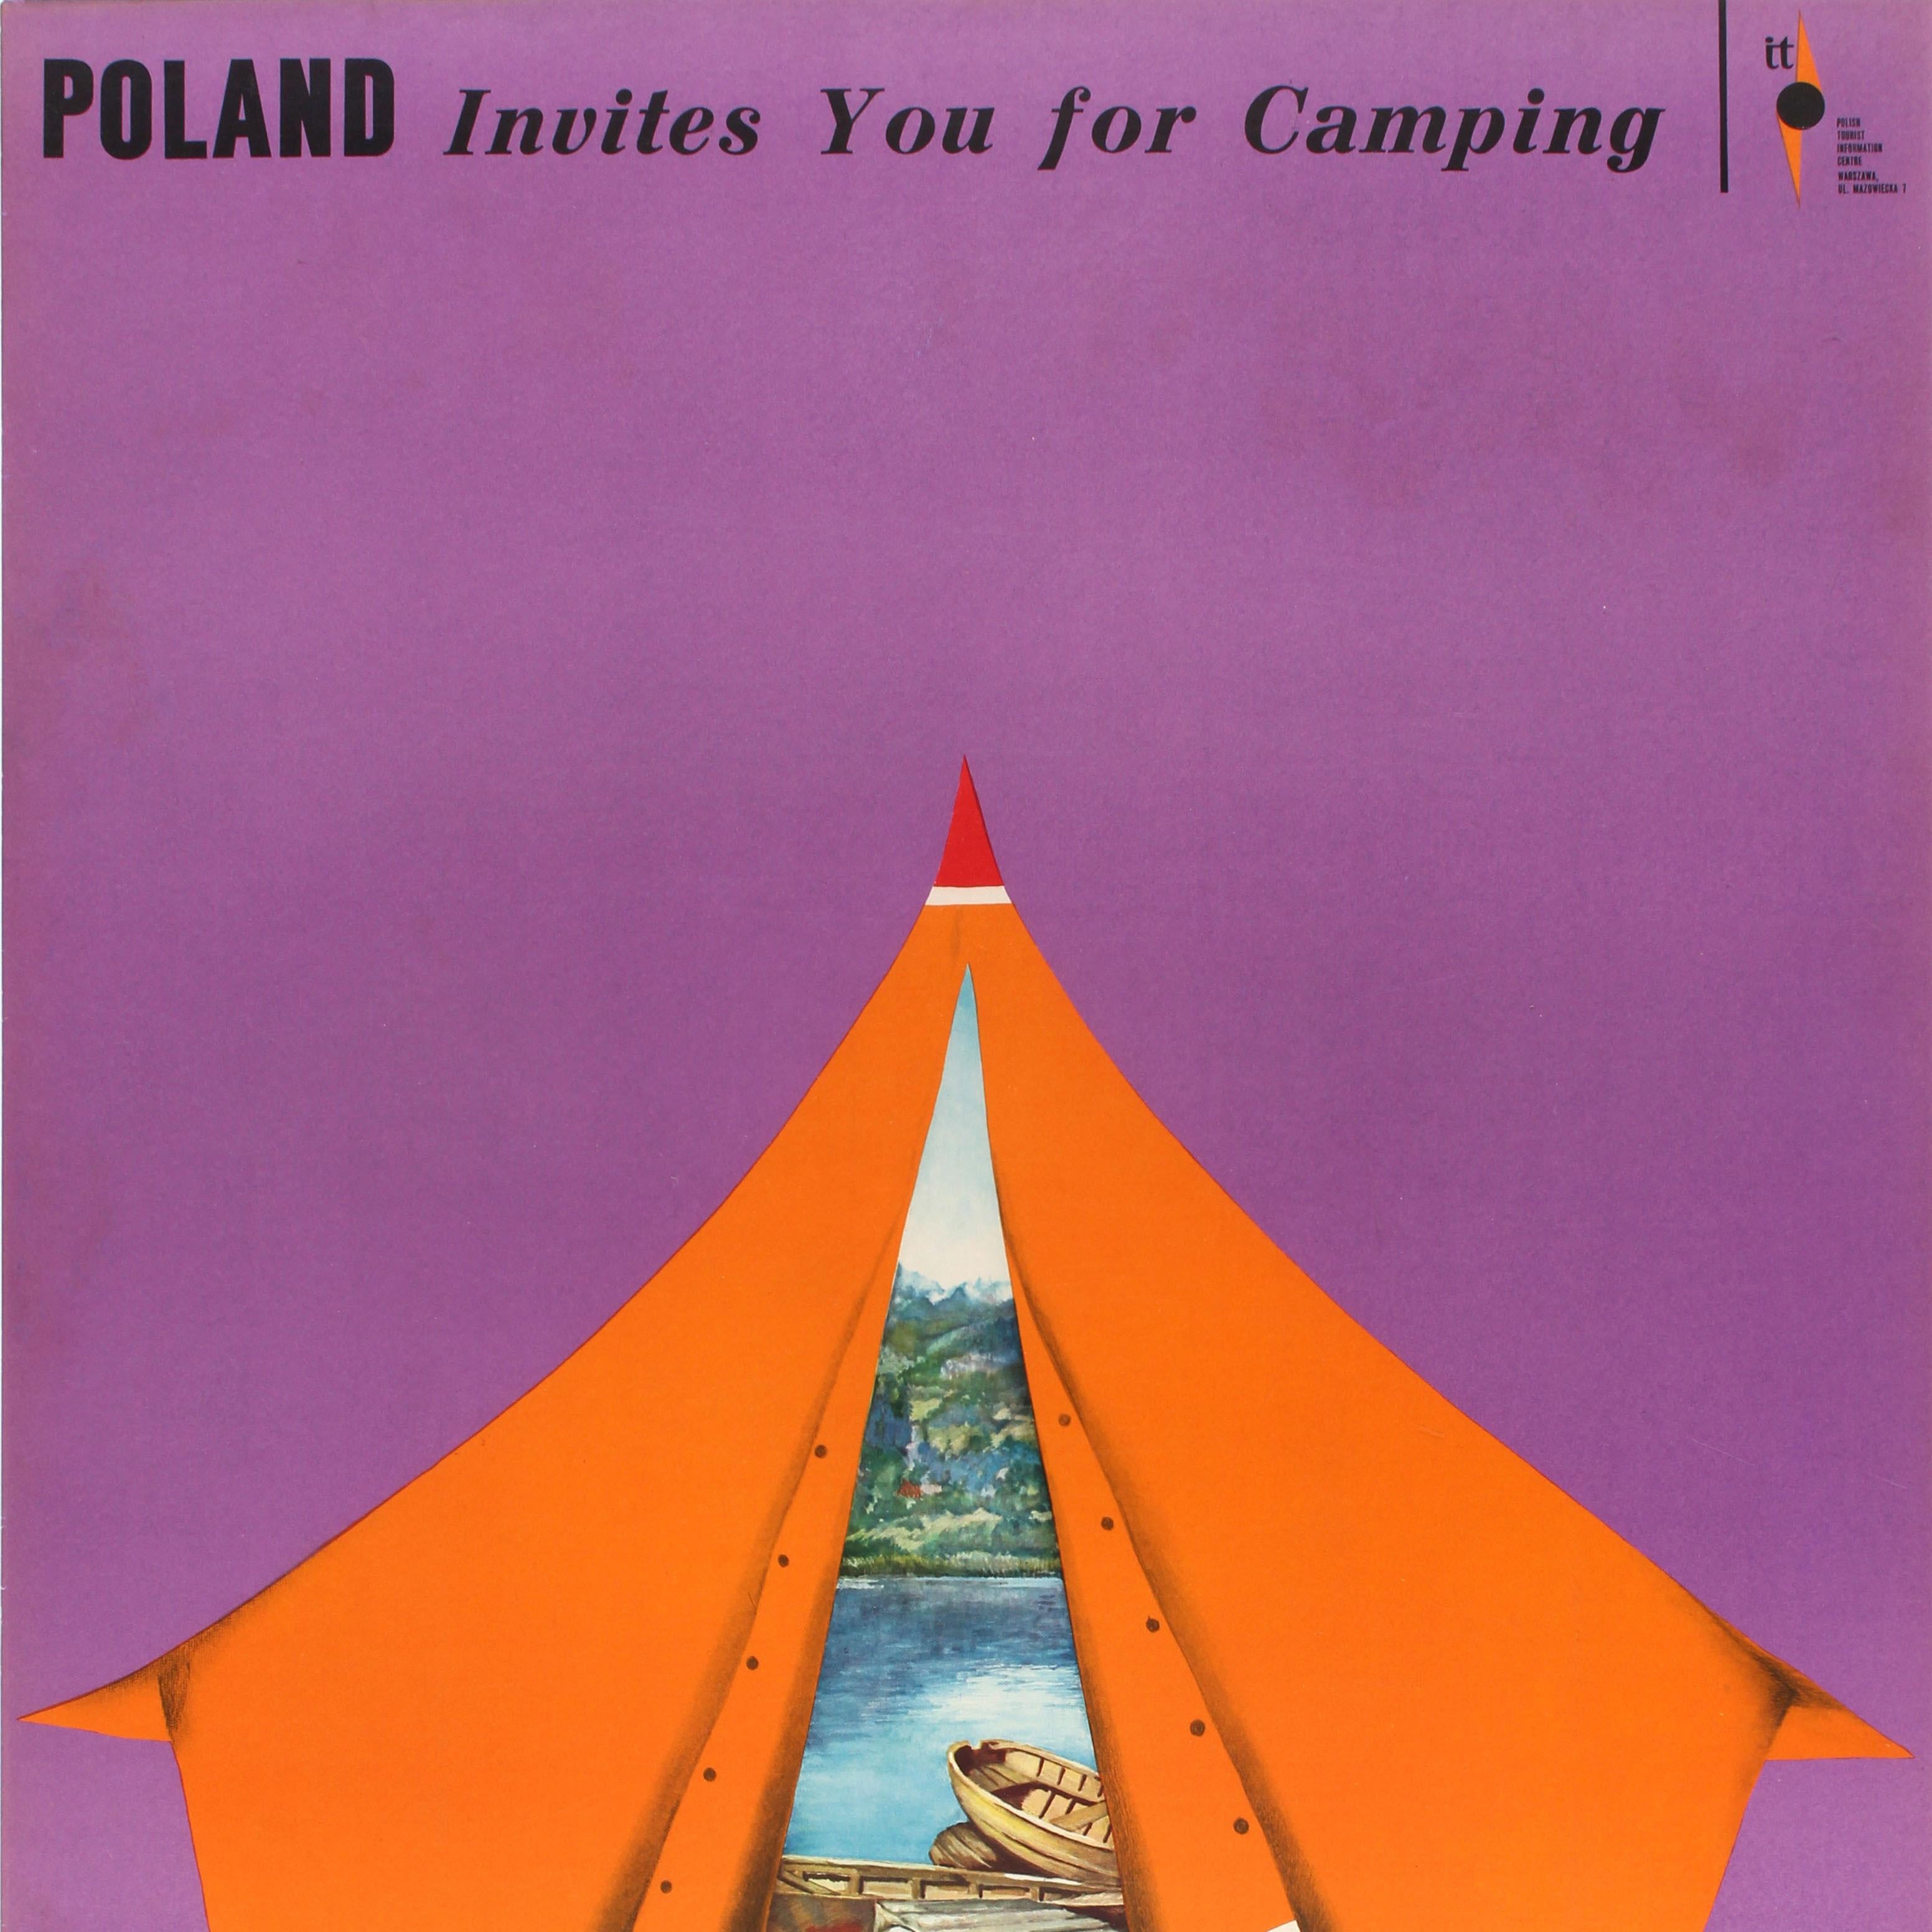 1970s tent